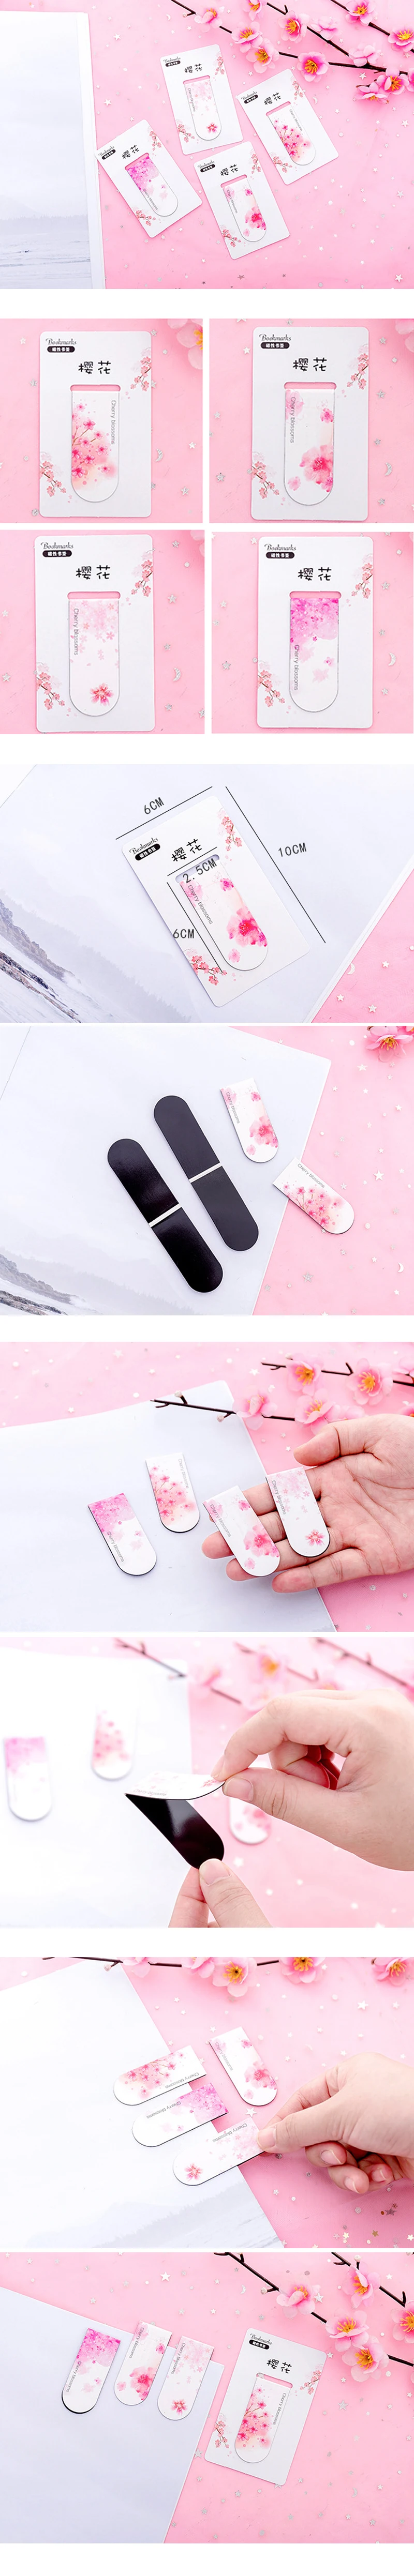 Розовый цветок красивый вишневый цветок Магнитная усиленная закладка материал Эсколар магнитные закладки для книги канцелярские принадлежности